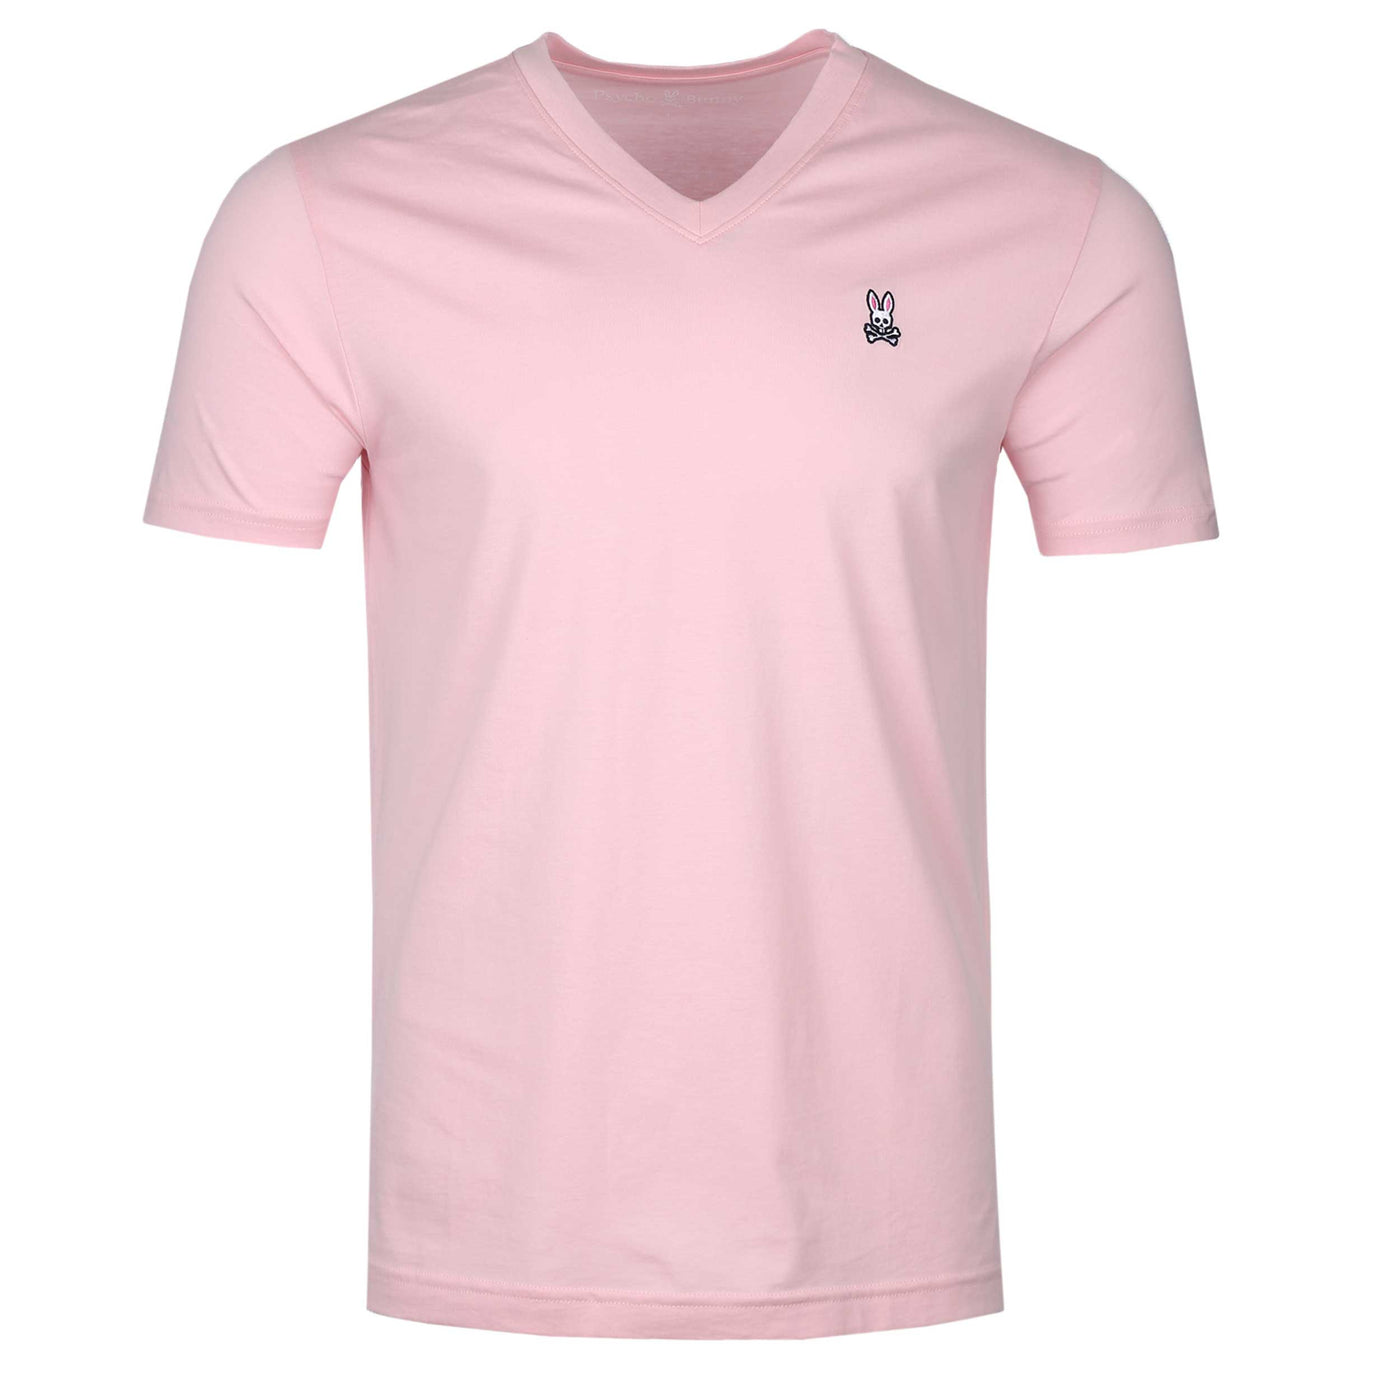 Psycho Bunny Classic V Neck T Shirt in Buena Vista Pink